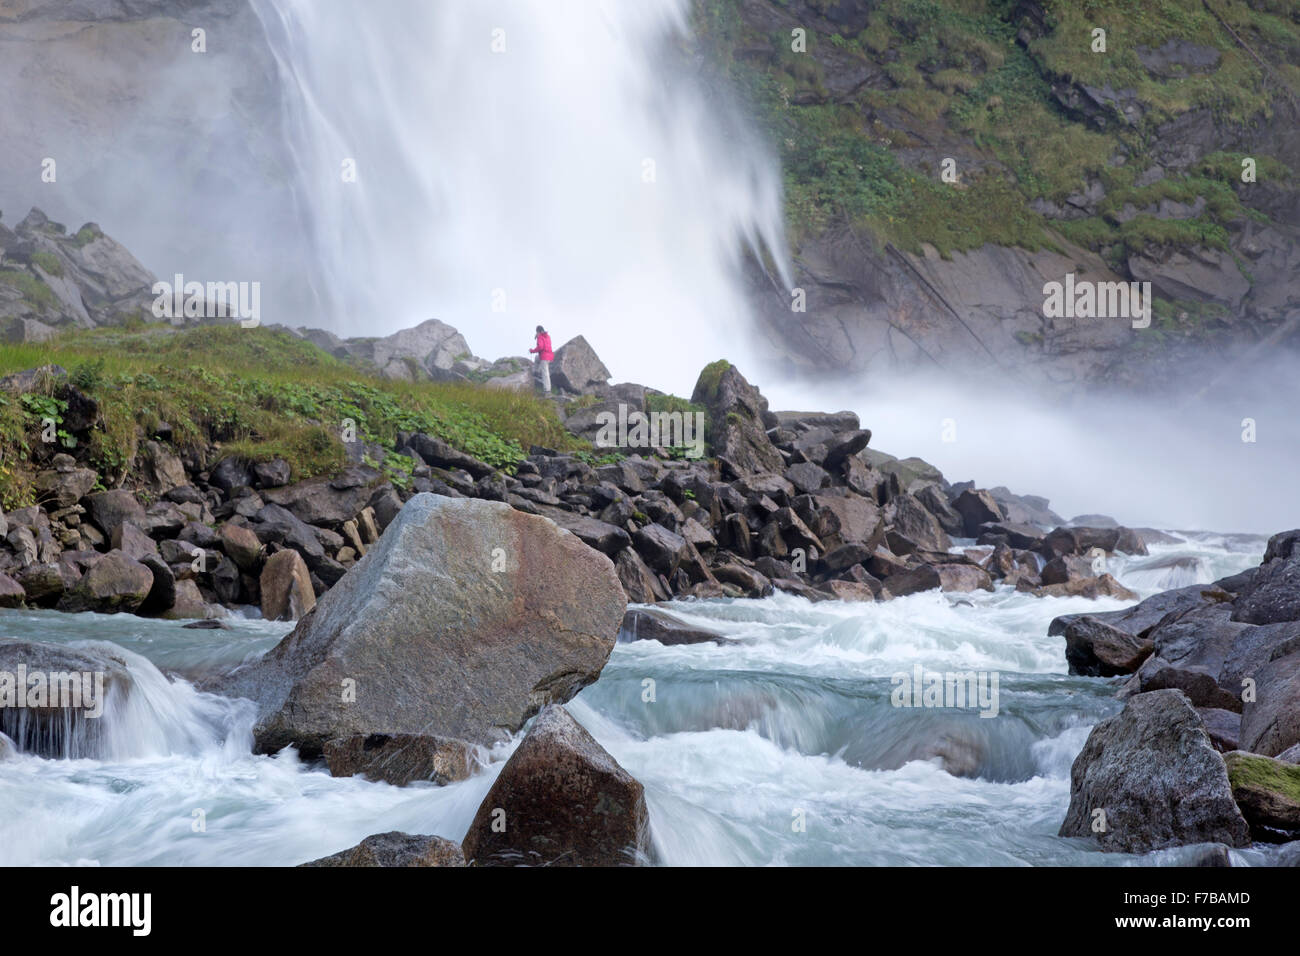 Unteren Krimmler Wasserfall, Krimml, Zell am siehe Bezirk, Nationalpark Hohe Tauern, Salzburg, Austria, Europe Stockfoto